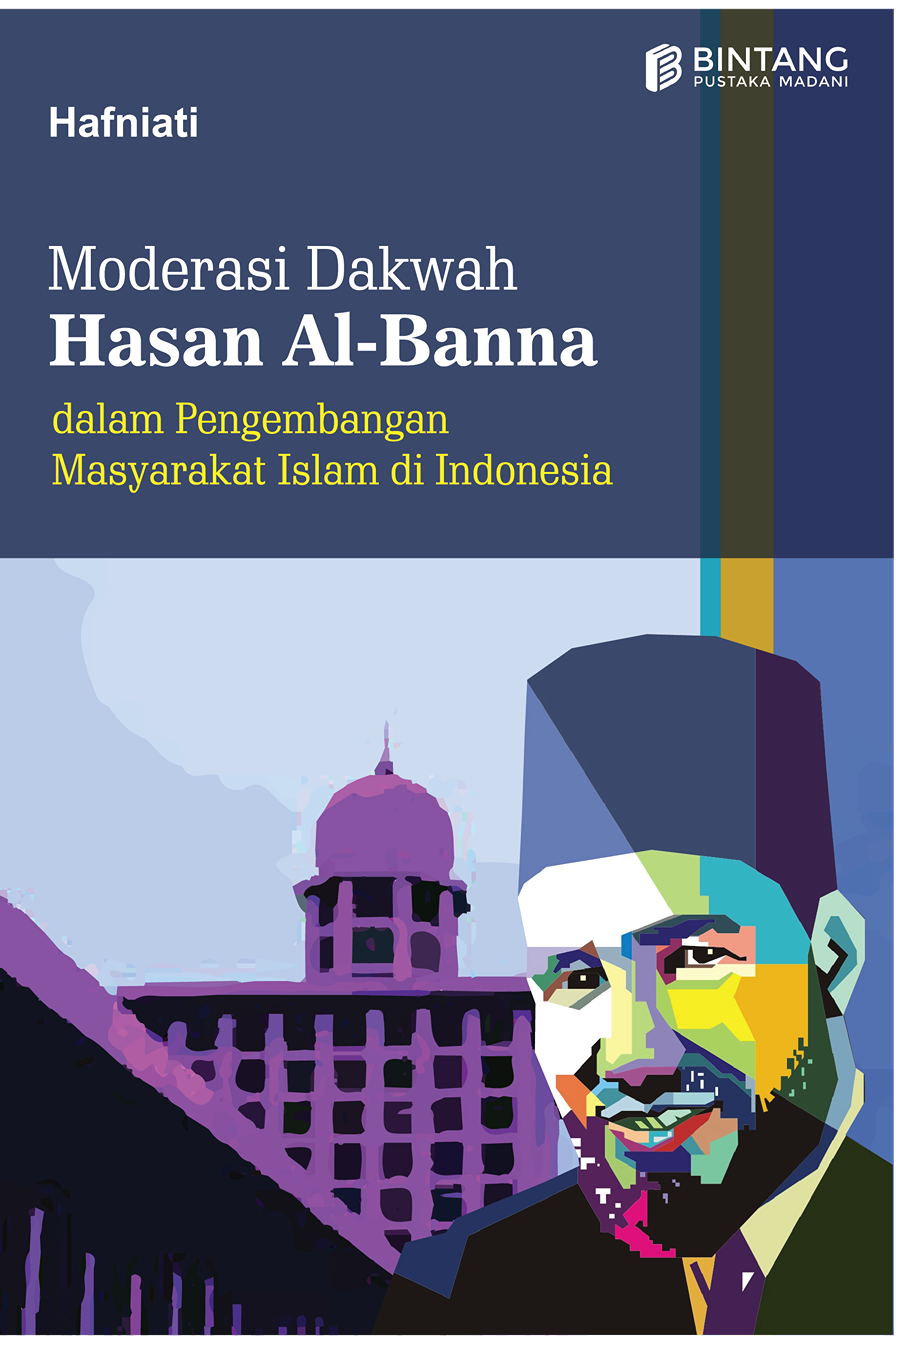 cover/(14-10-2022)moderasi-dakwah-hasan-al-banna-dalam-pengembangan-masyarakat-islam-di-indonesia.png